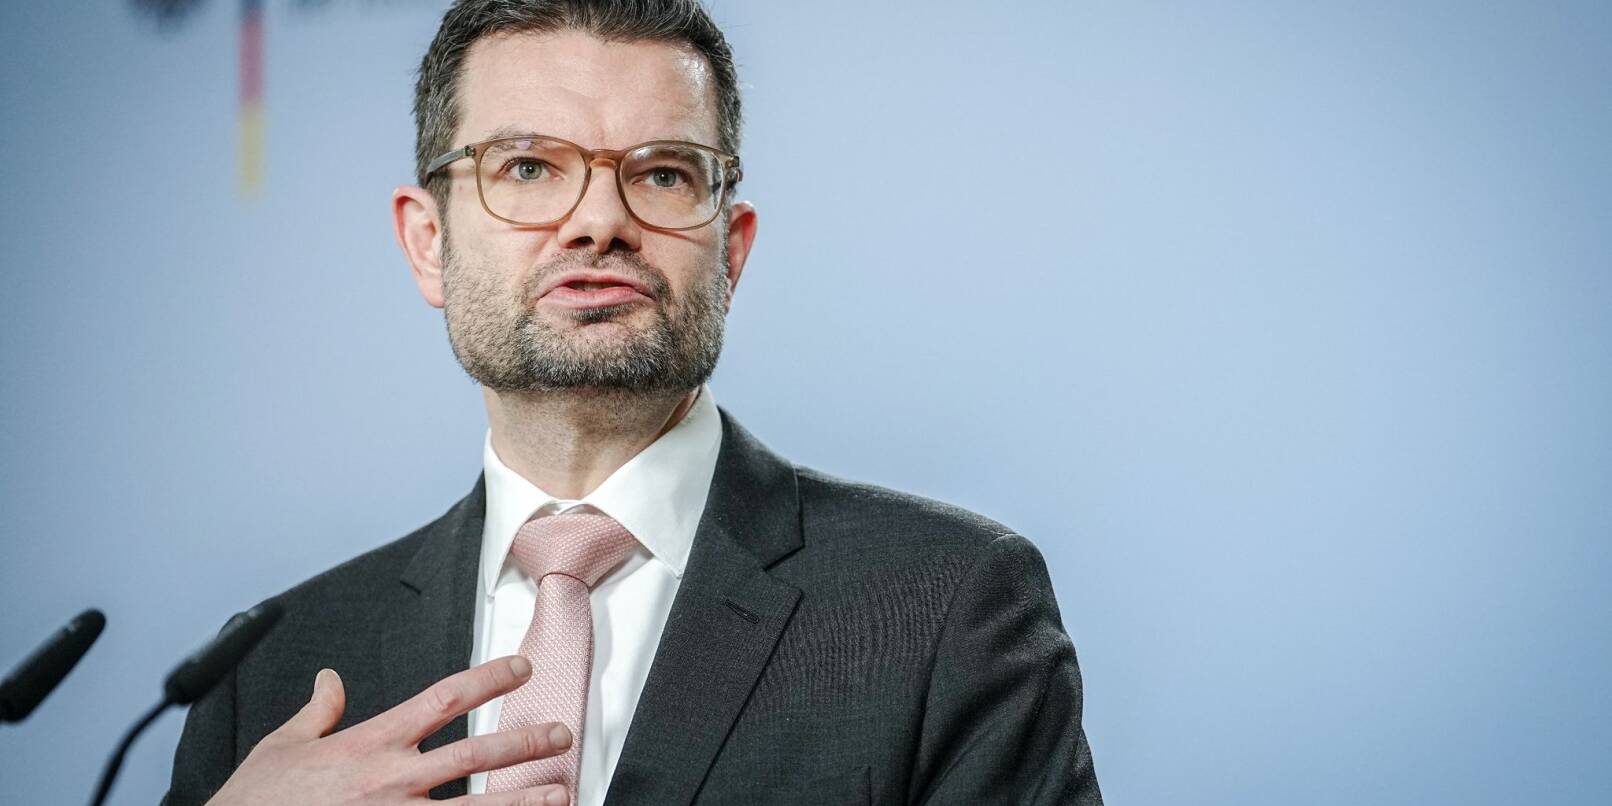 Justizminister Marco Buschmann (FDP) will einen Entwurf zur Absicherung des Verfassungsgerichts vorlegen.